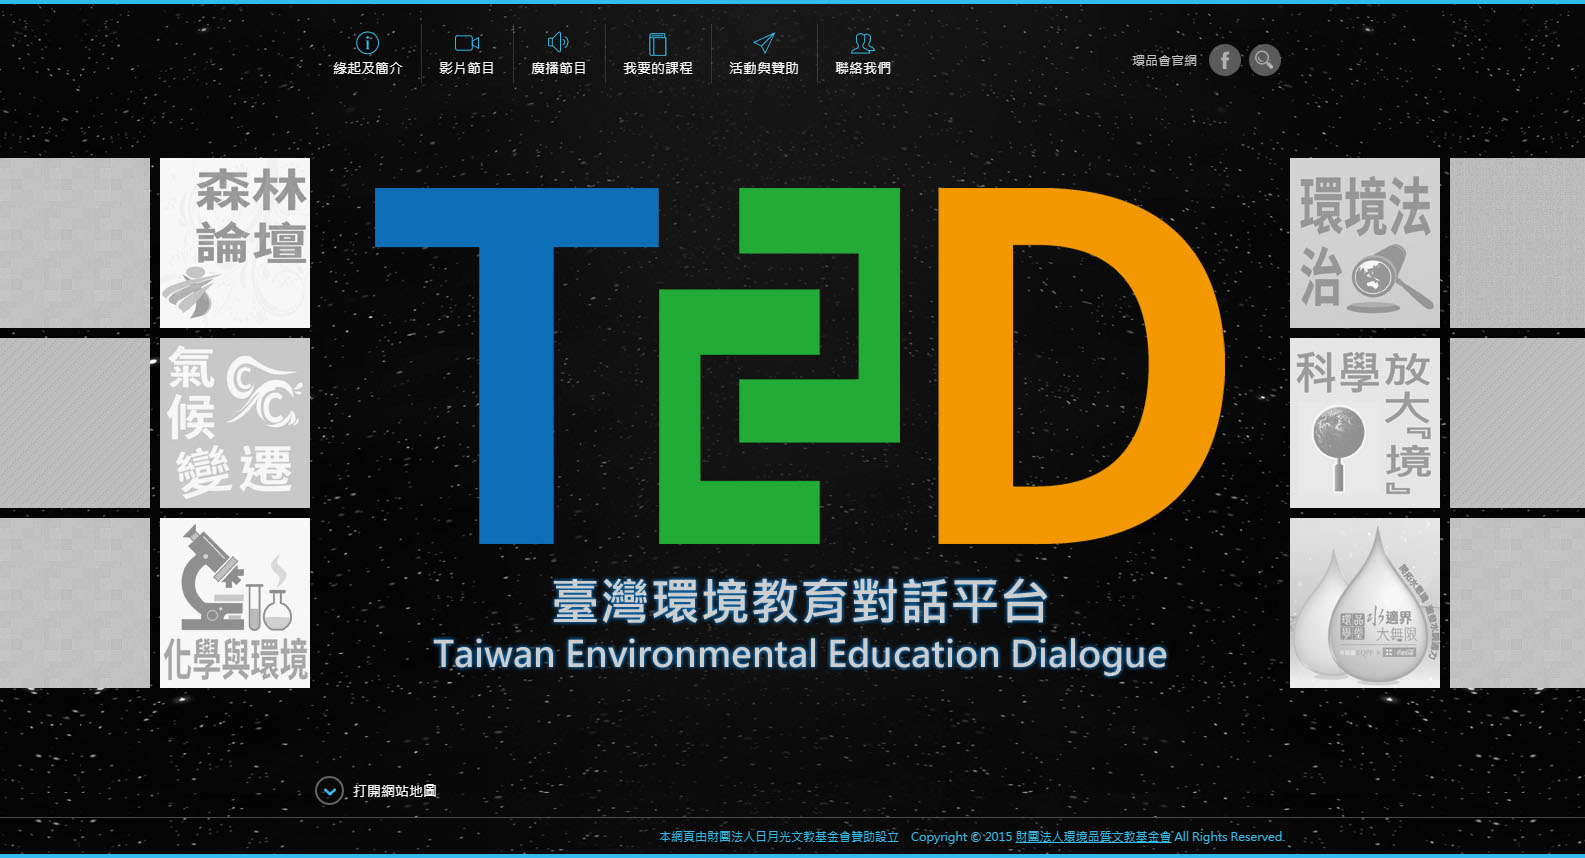 臺灣環境教育對話平台首頁畫面